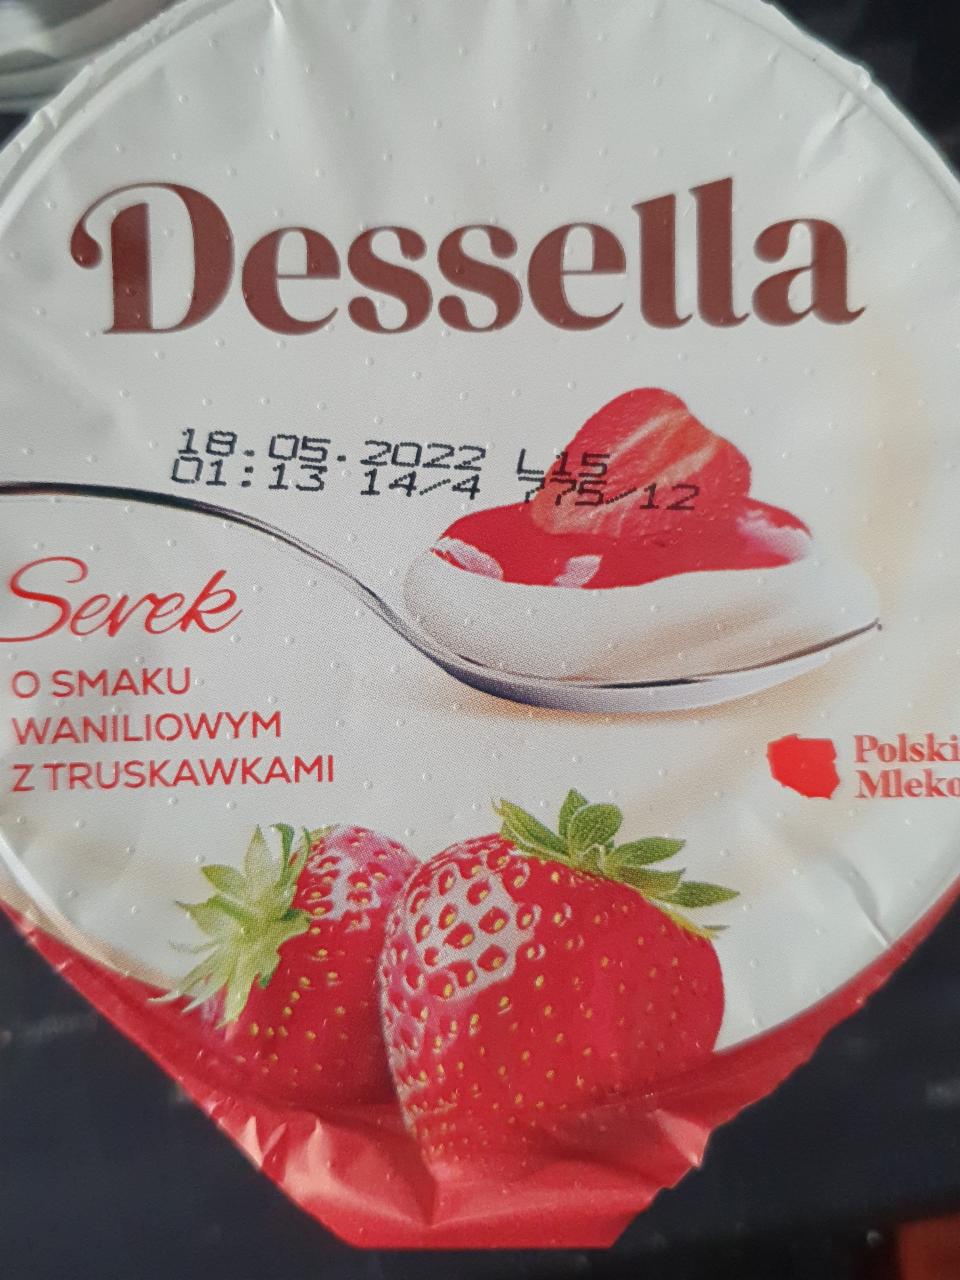 Фото - Serek o smaku waniliowym z truskawkami Dessella